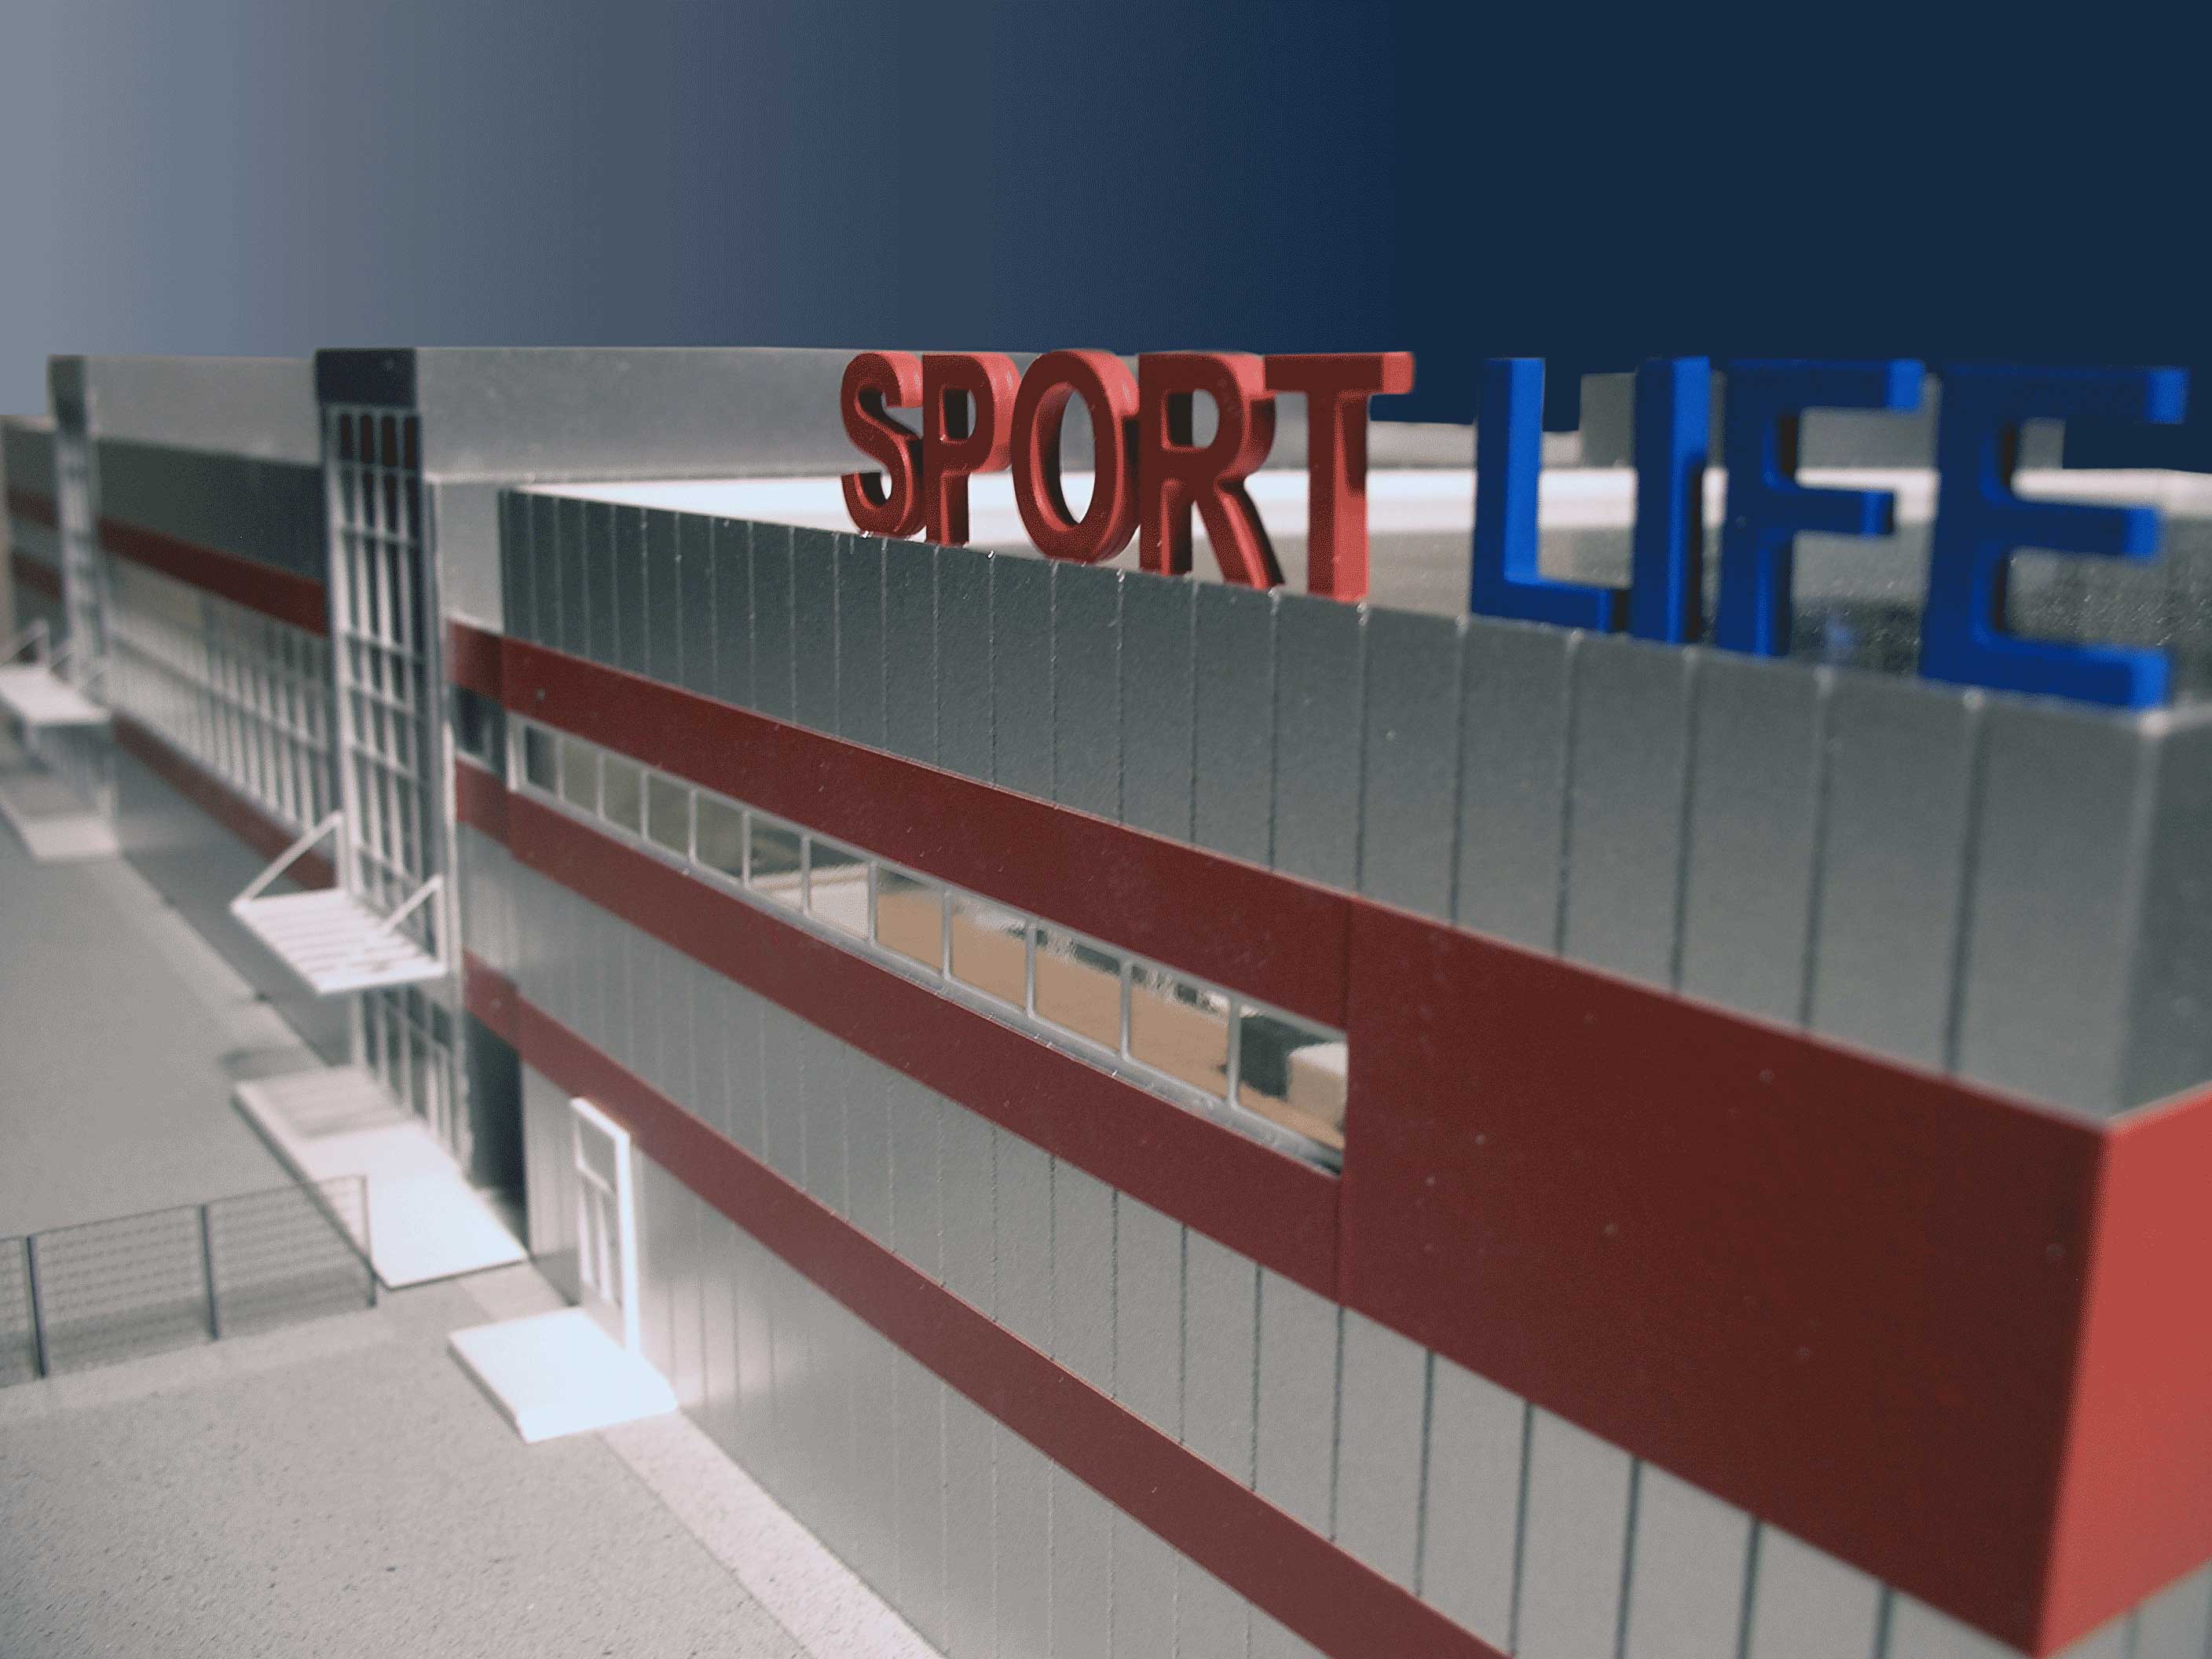 Модель оздоровительного комплекса «Sportlife». Масштаб 1:100.